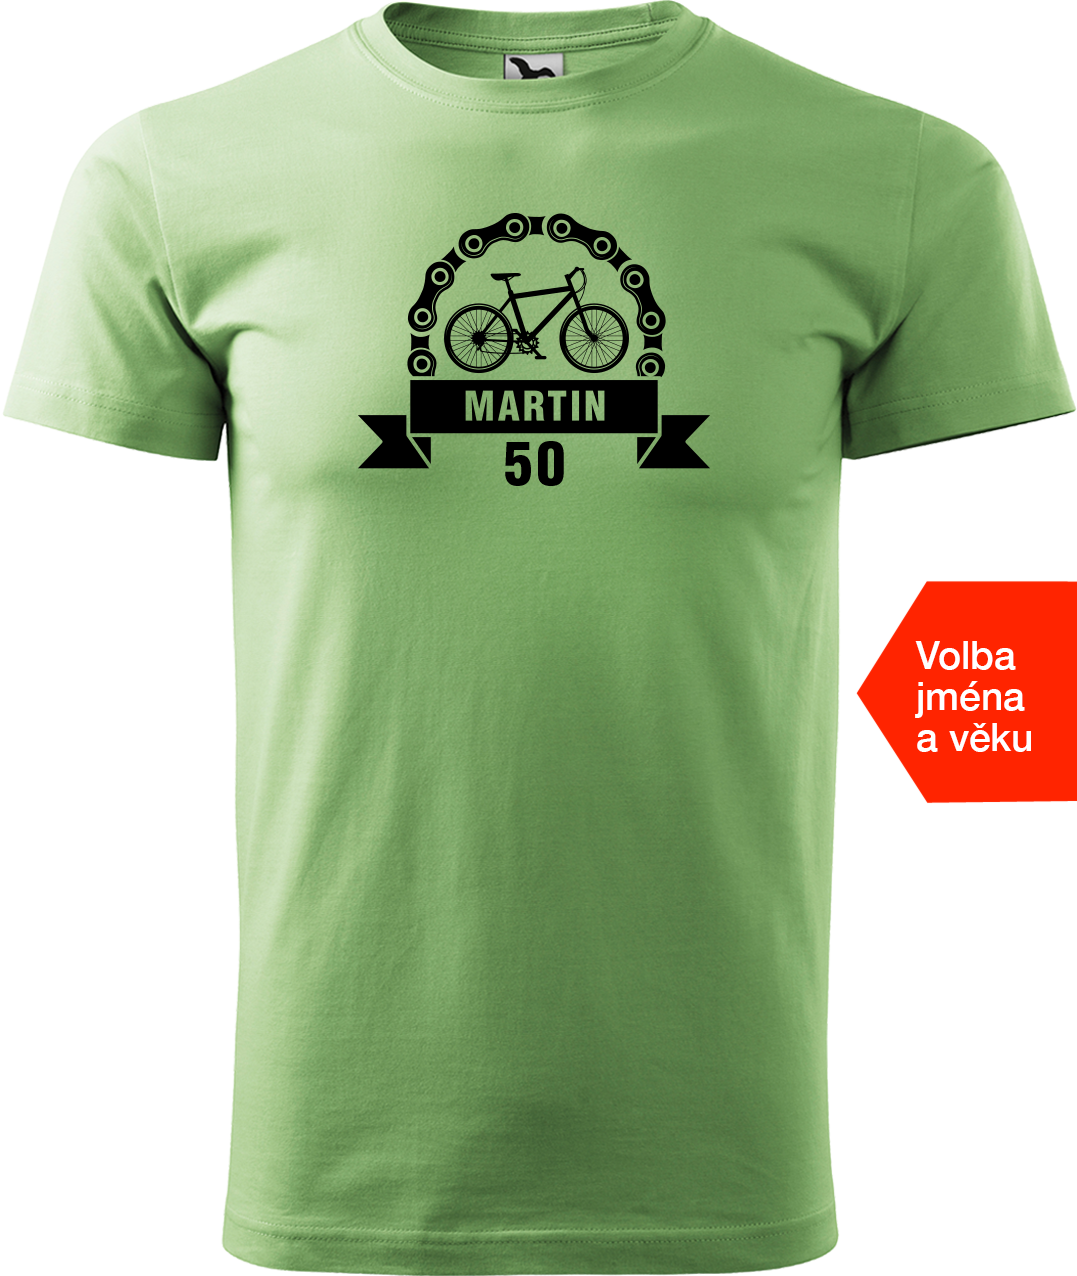 Pánské tričko pro cyklistu se jménem a věkem - Blahopřání Velikost: S, Barva: Trávově zelená (39)